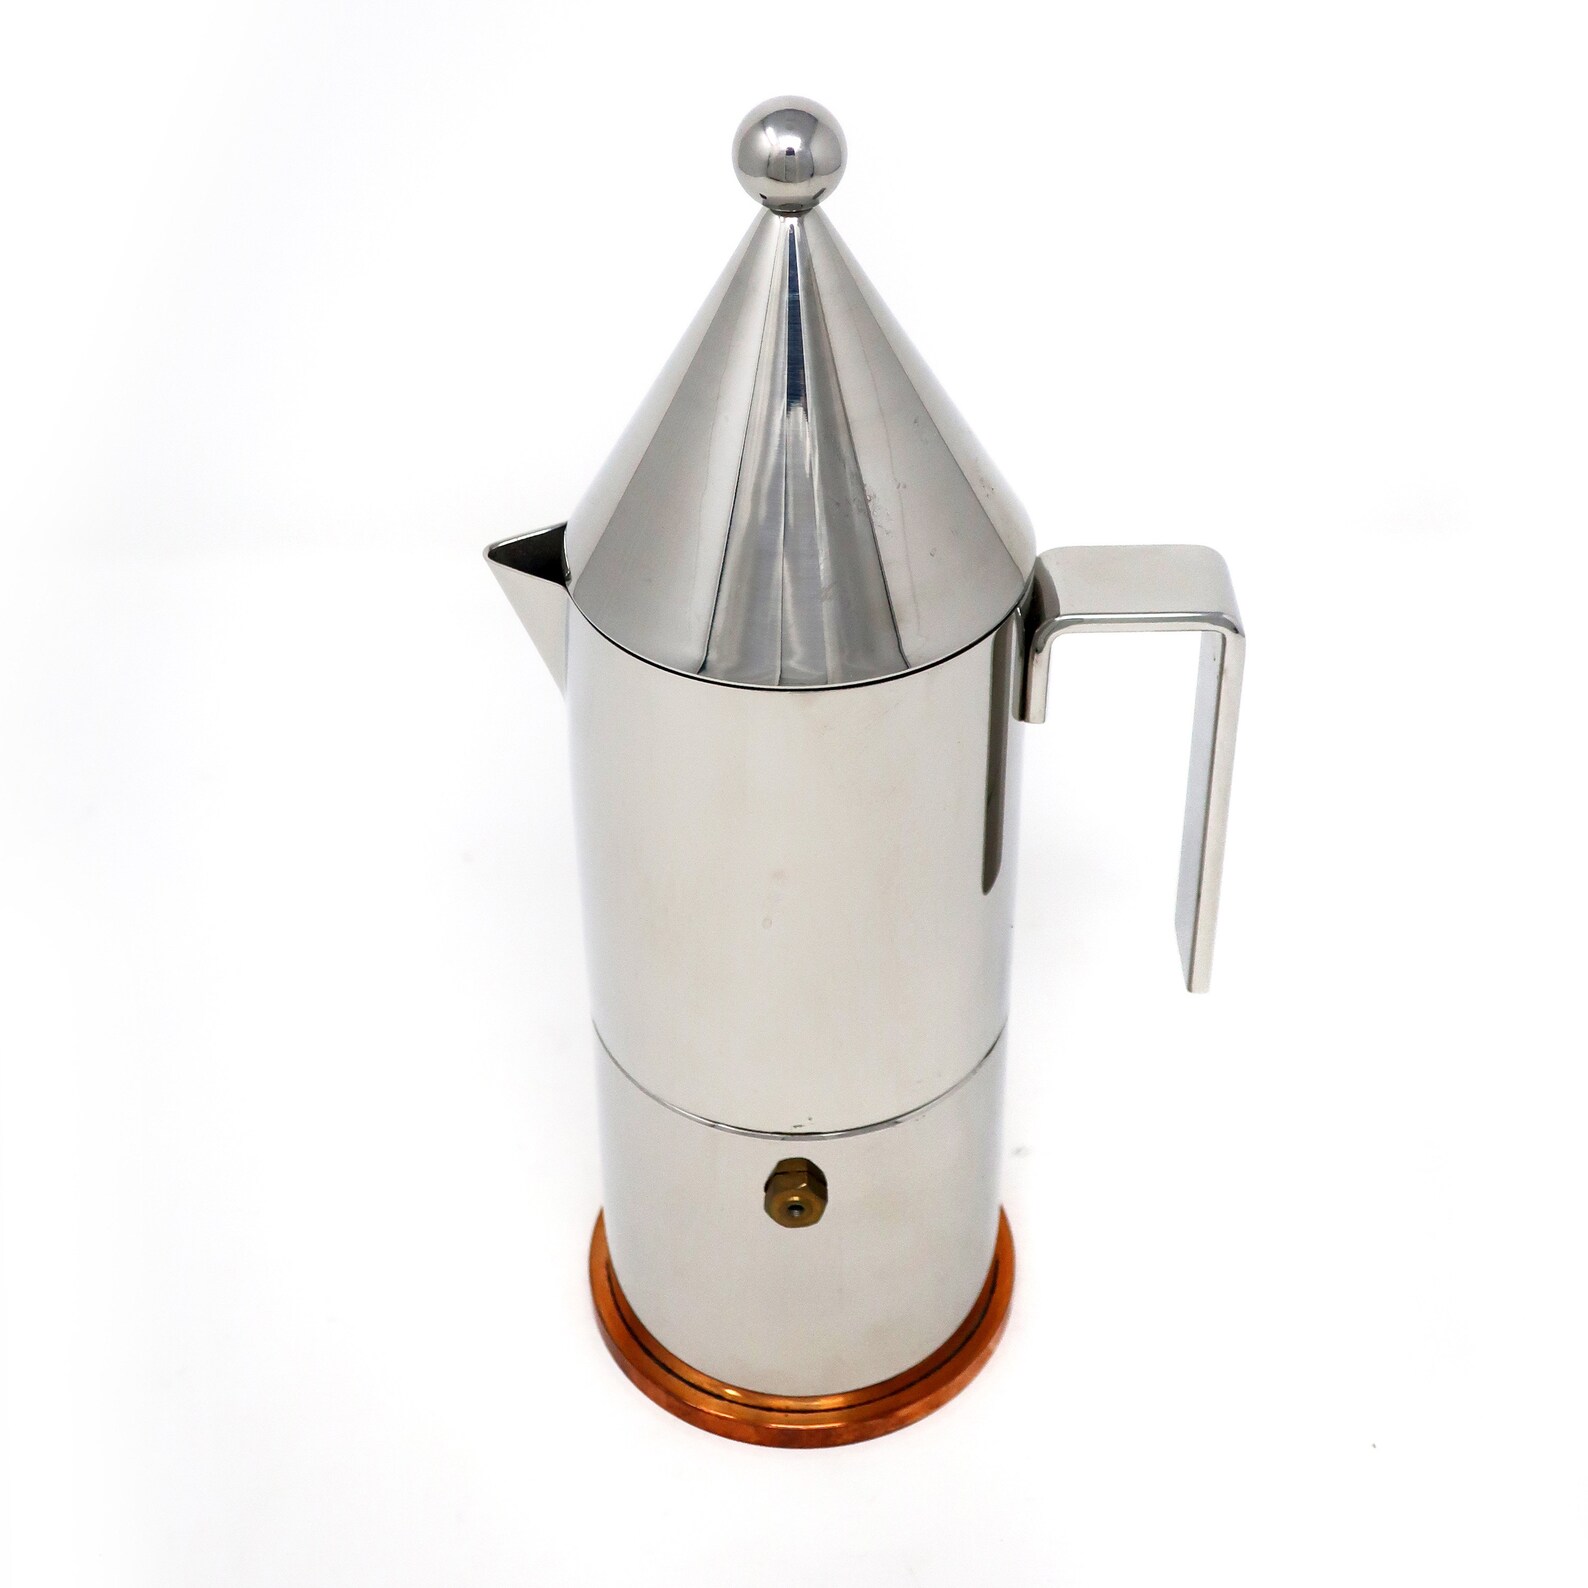 La Conica Three Cup Espresso Maker by Aldo Rossi for Alessi | Etsy